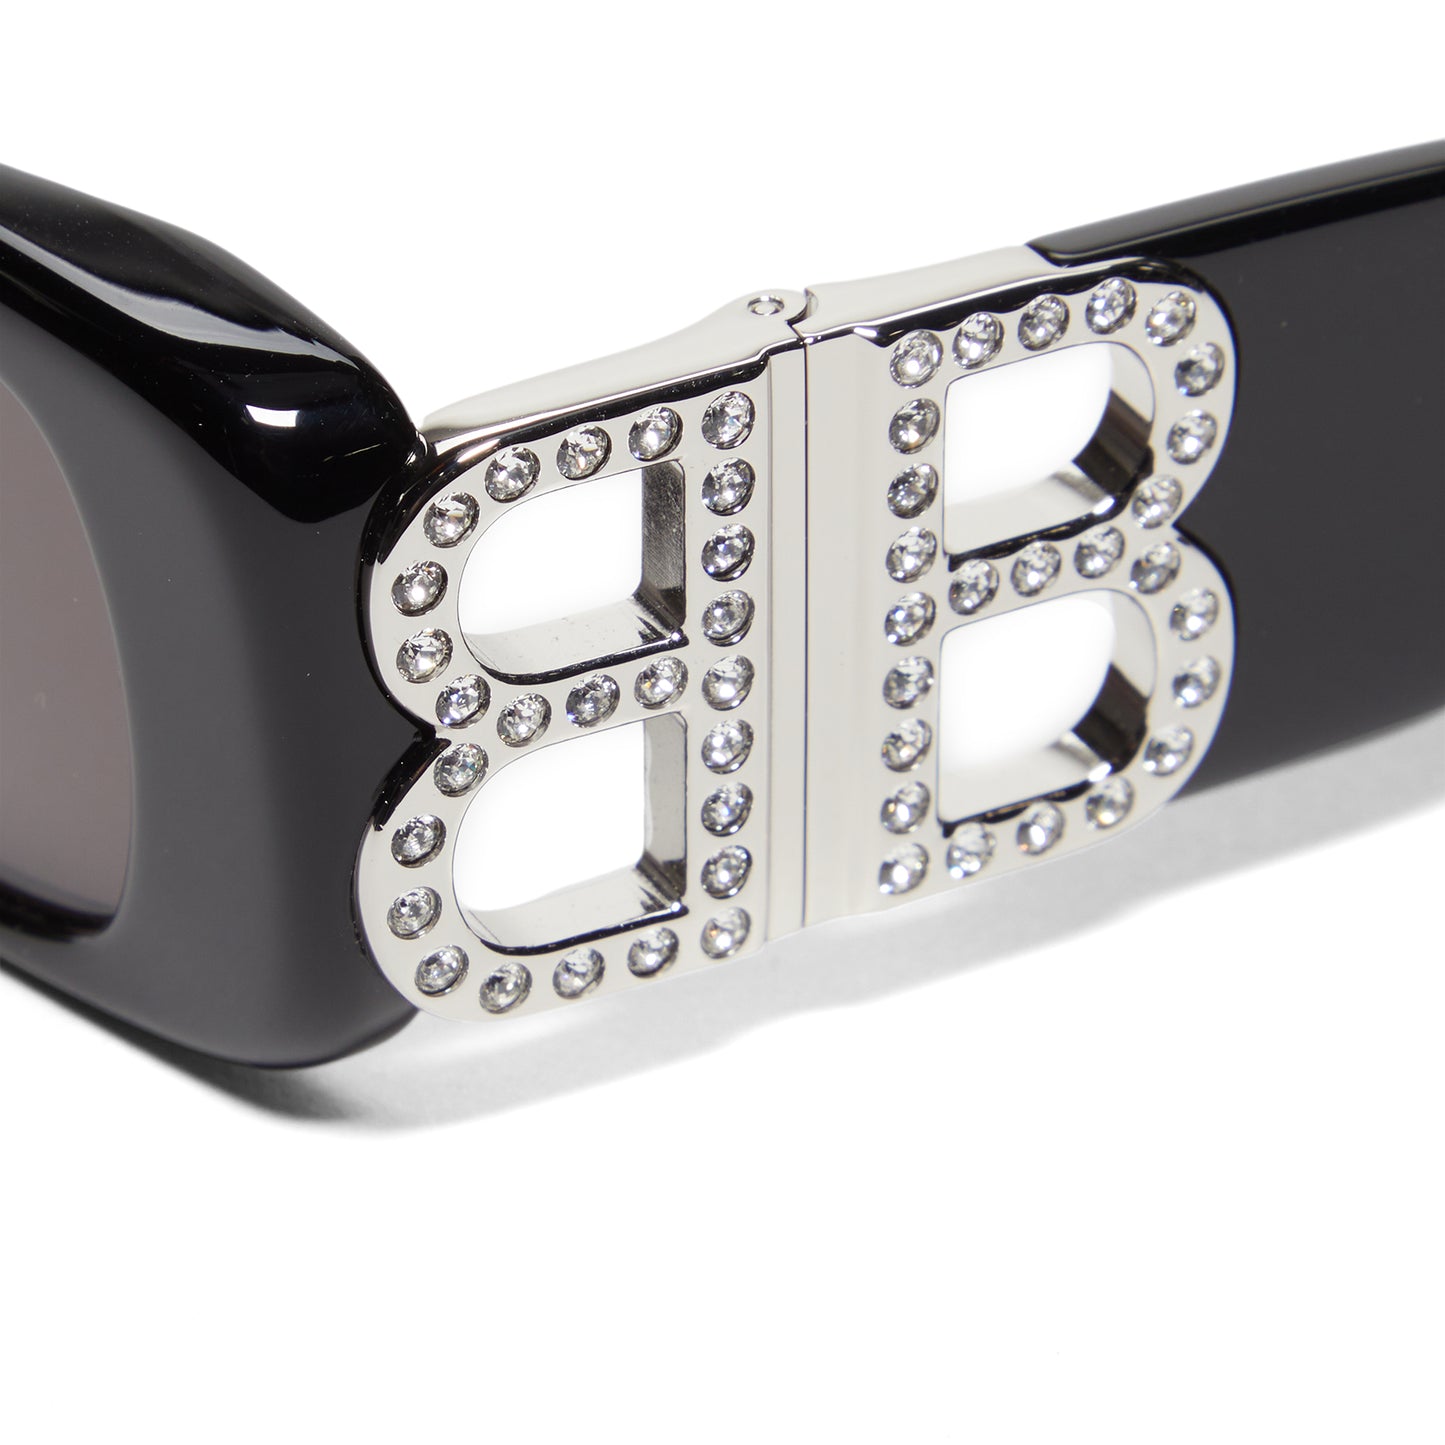 Balenciaga Dynasty Rectangle Sunglasses (Black/Silver/Grey)